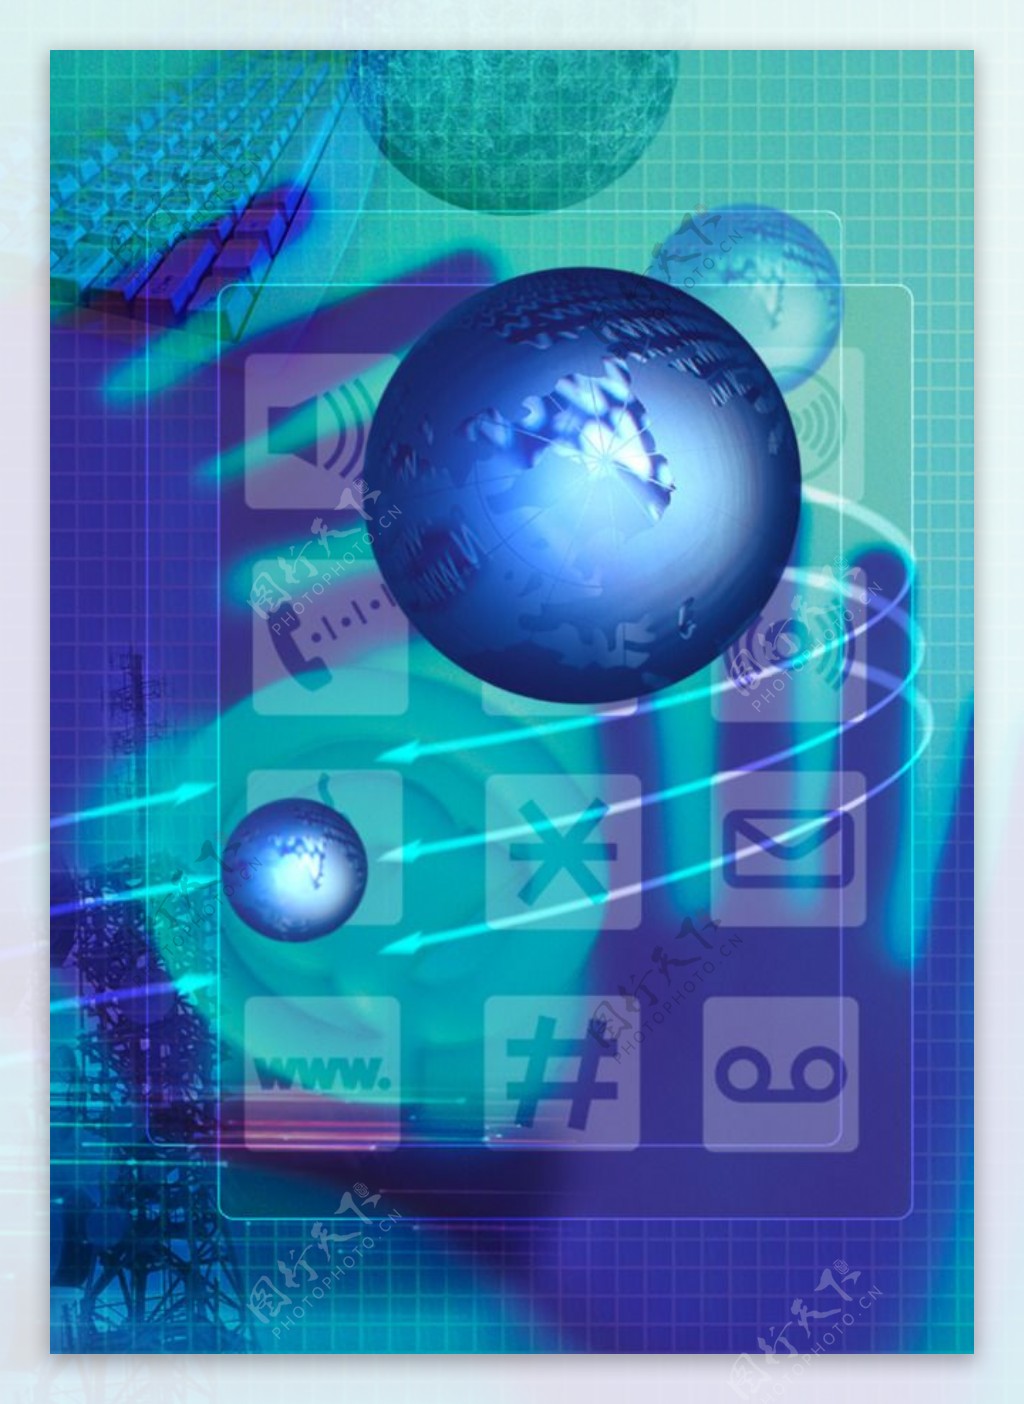 互联网科技背景设计psd素材蓝色图标